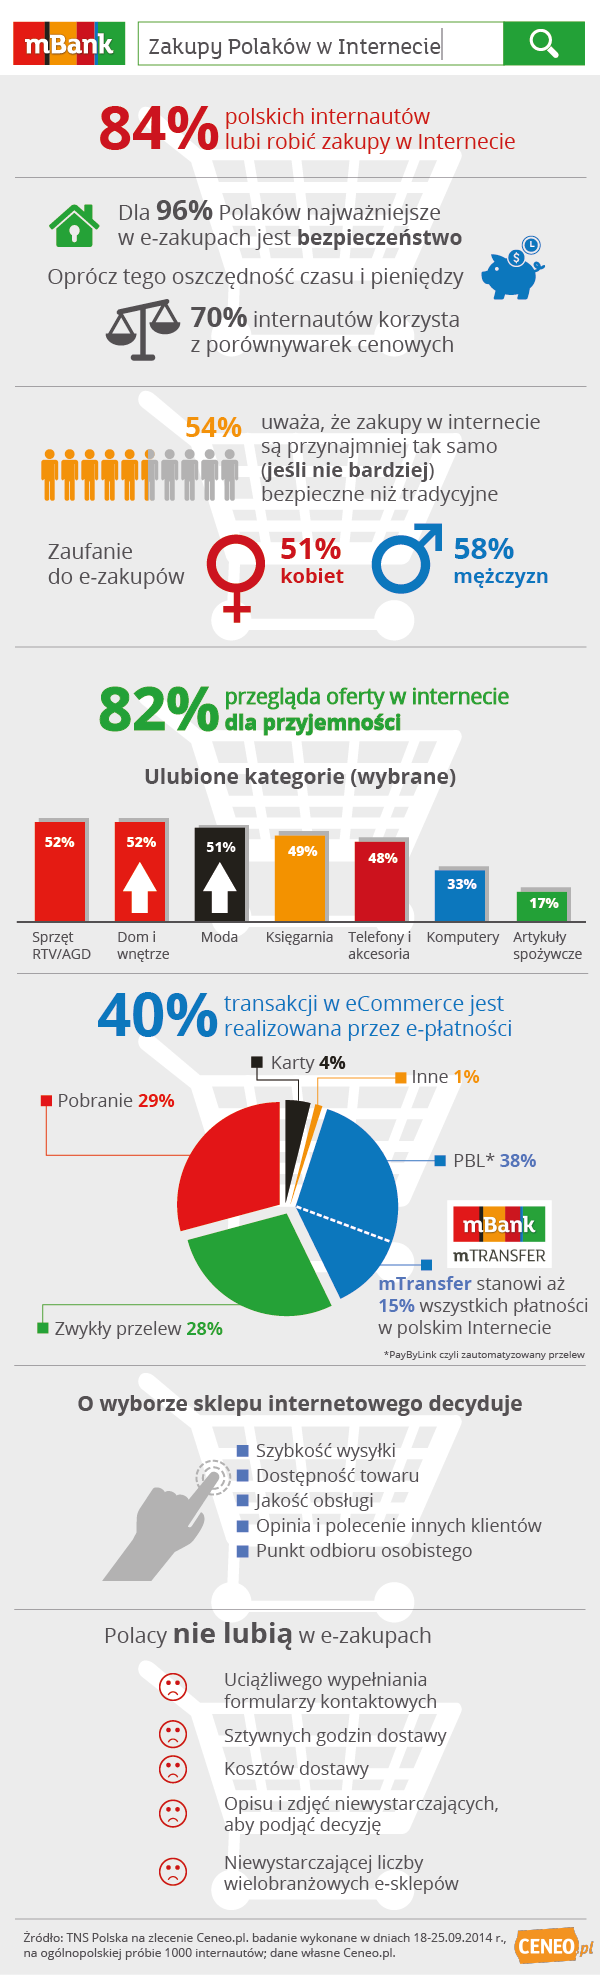 Zakupy Polaków w Internecie - infografika